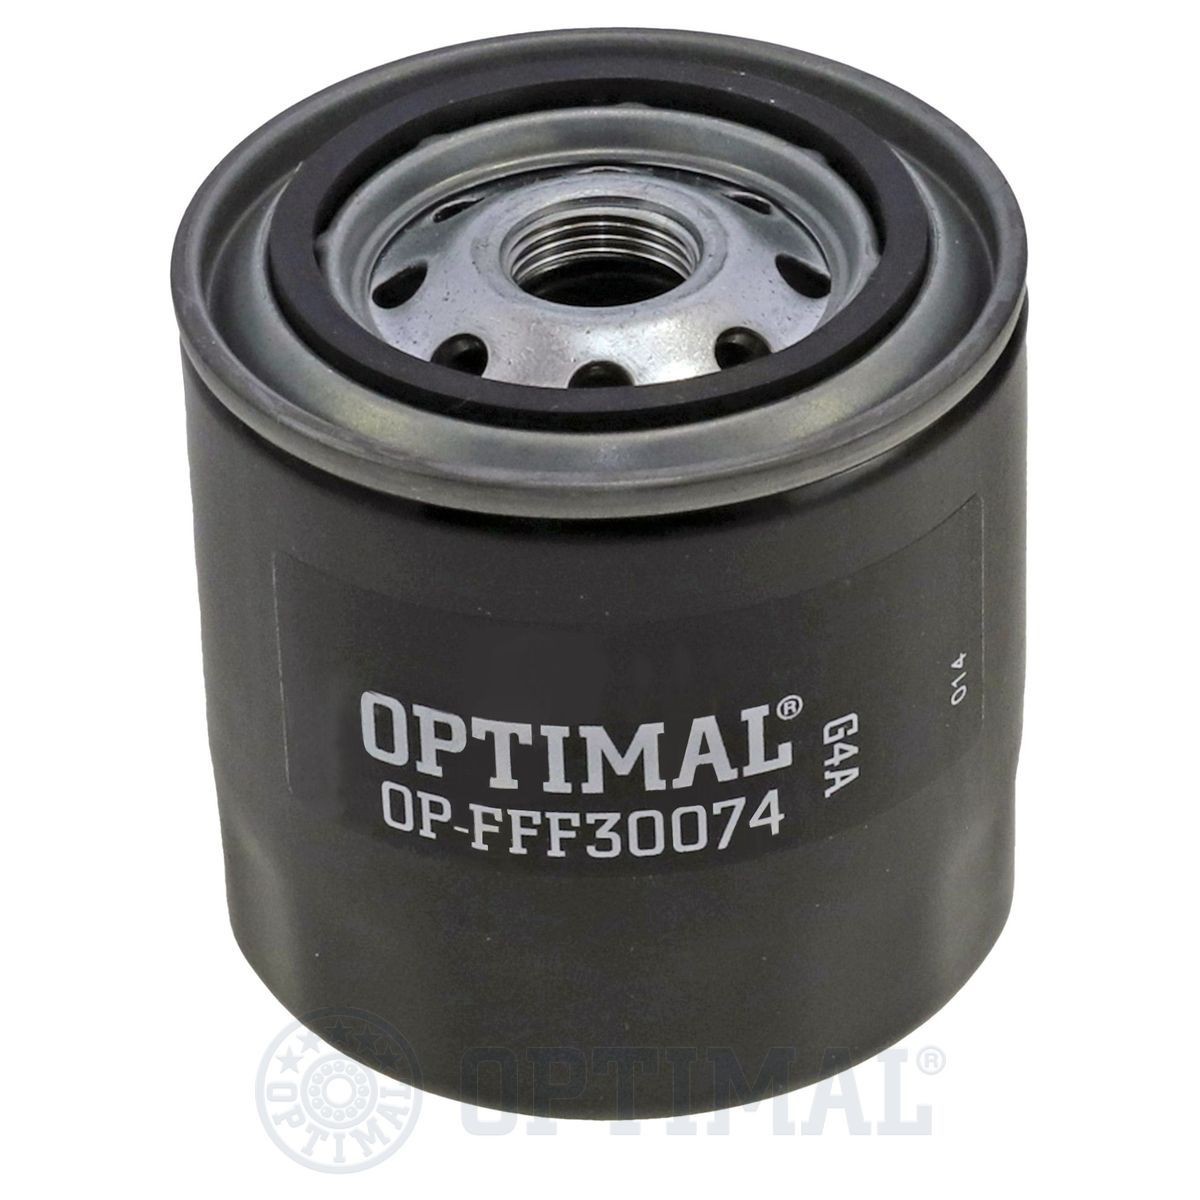 OPTIMAL OP-FFF30074 Fuel filter 22 08175